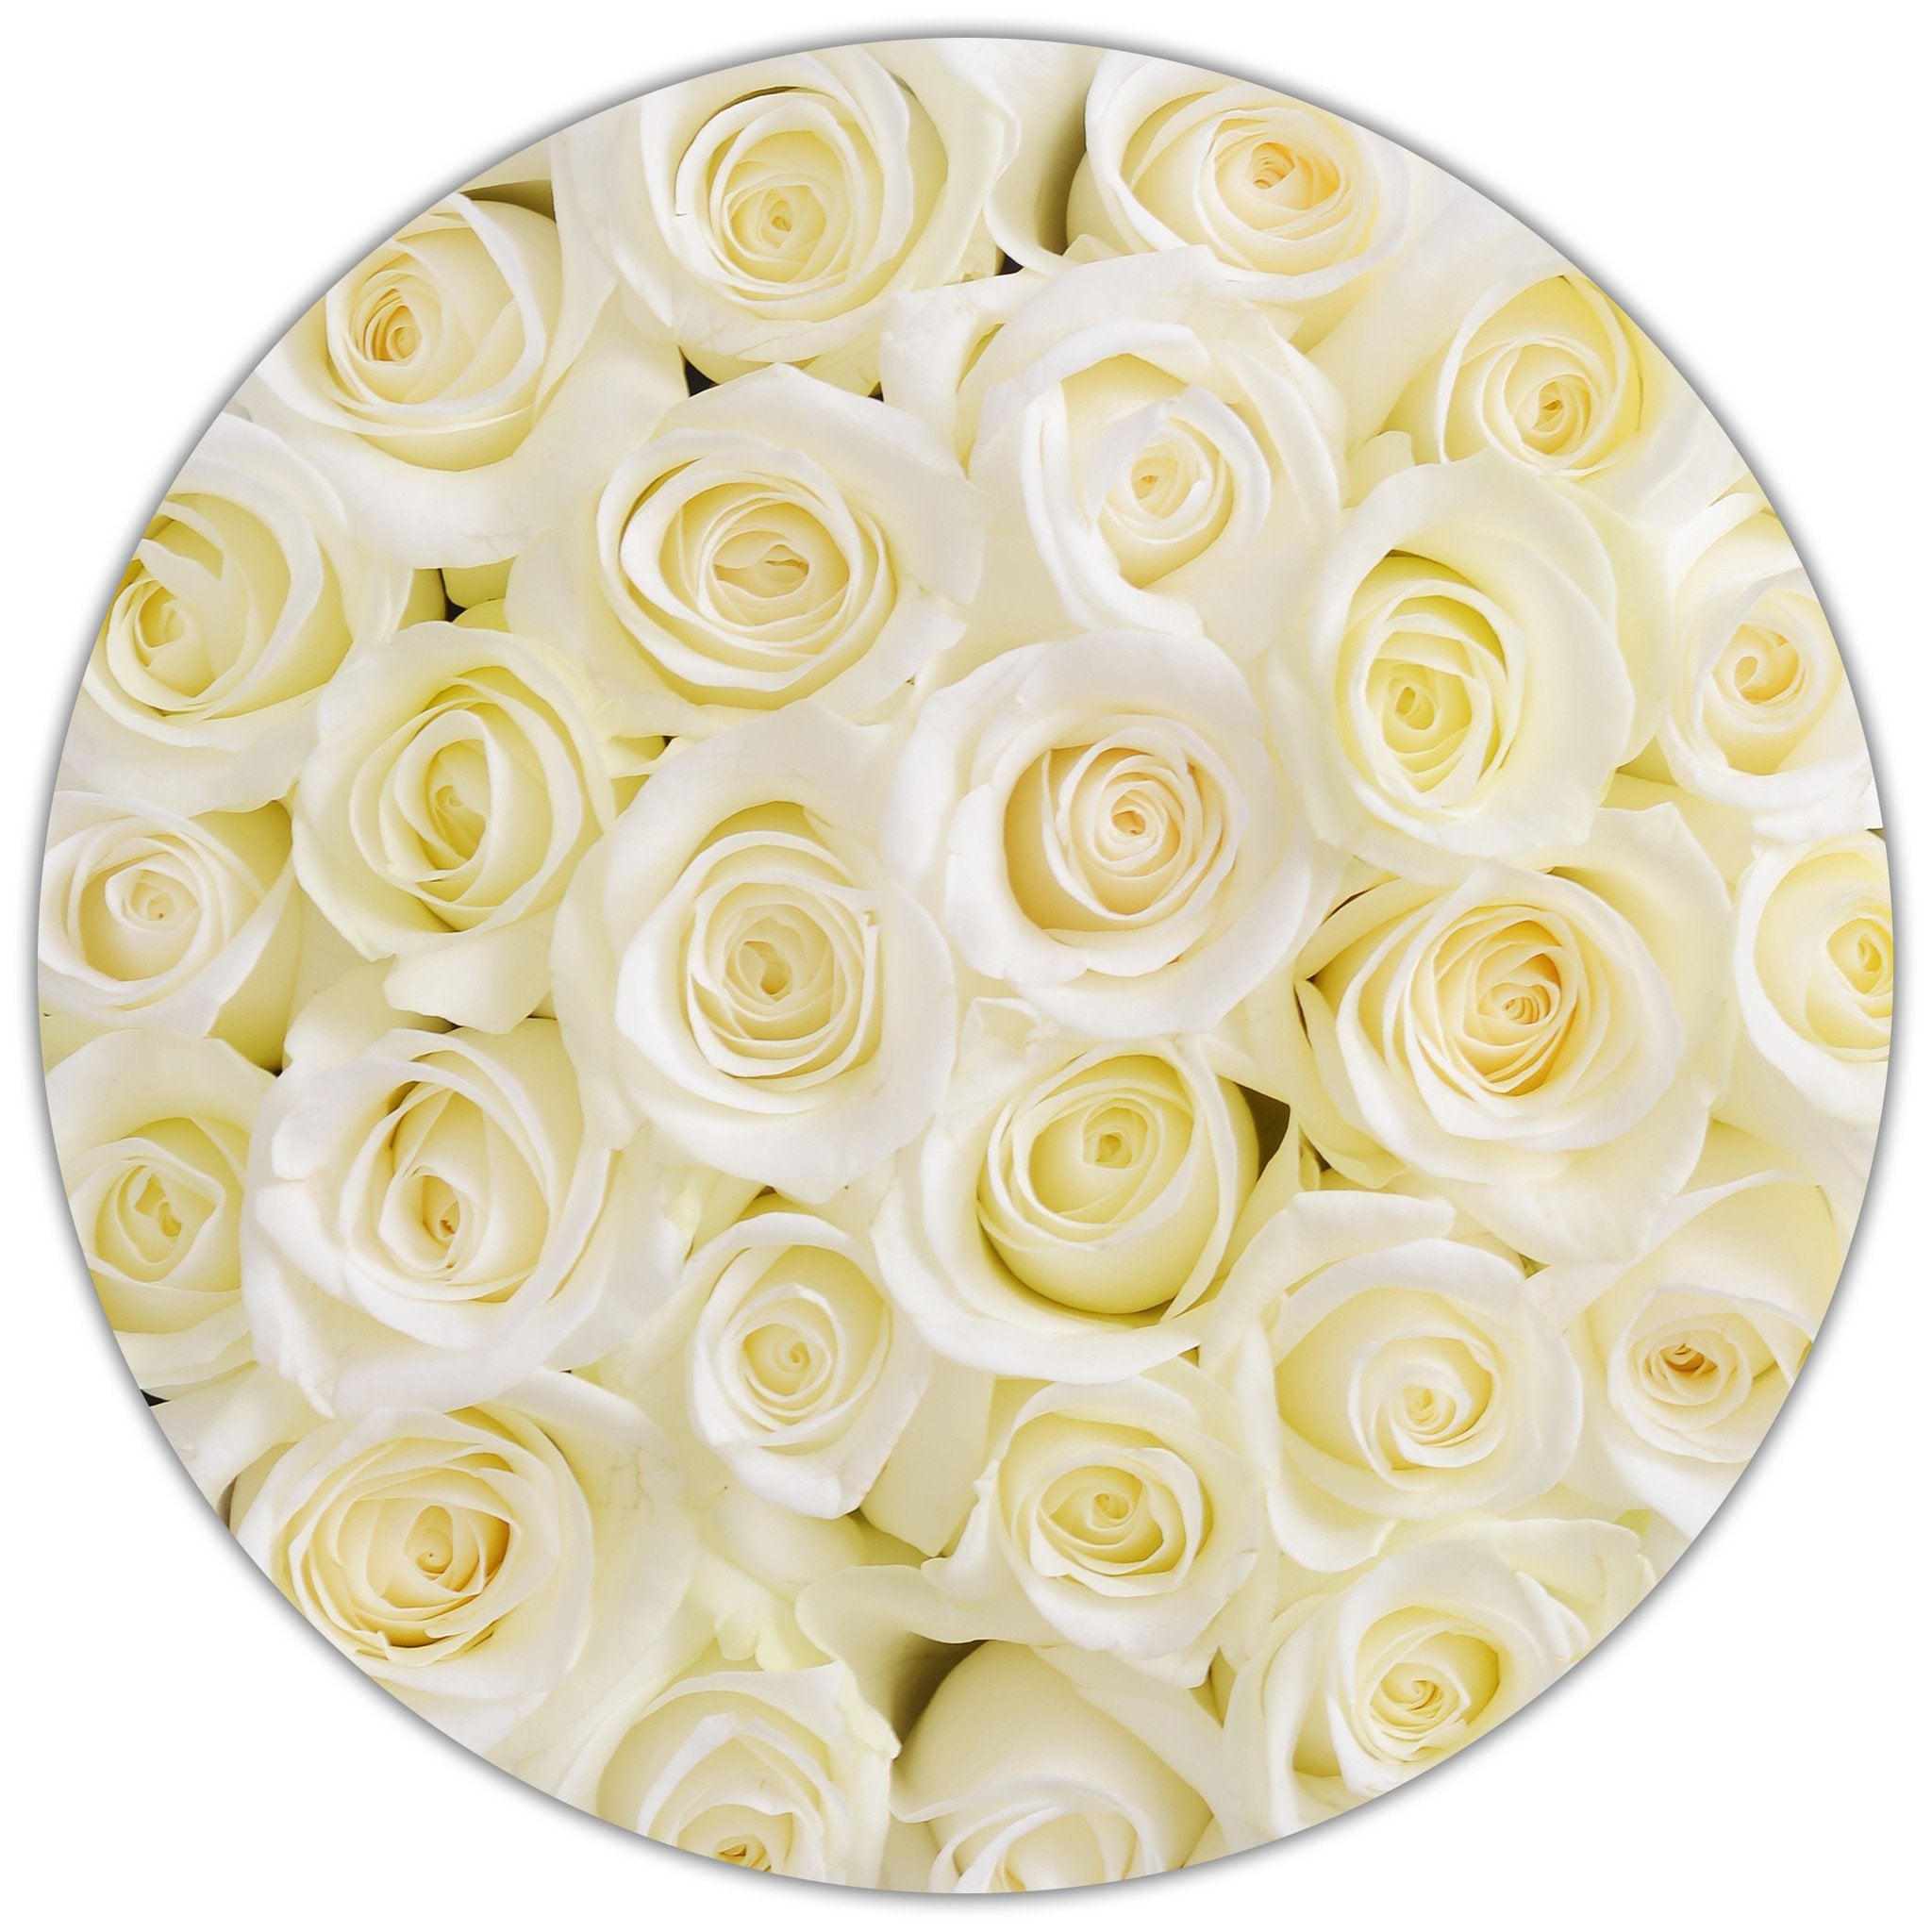 Aranjament floral cu trandafiri naturali albi în cutie mică alba